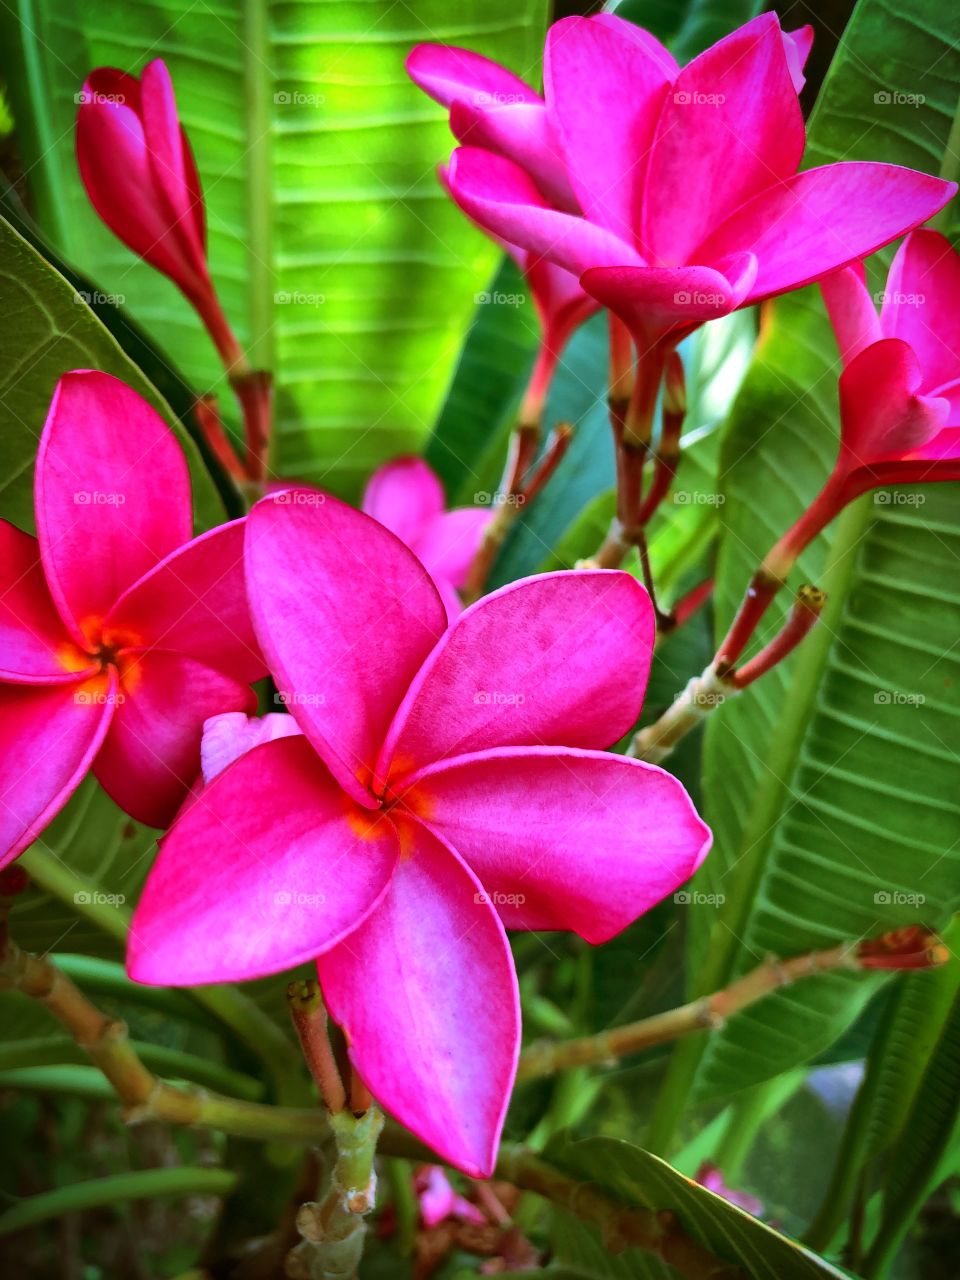 Fragrant frangipani blooms